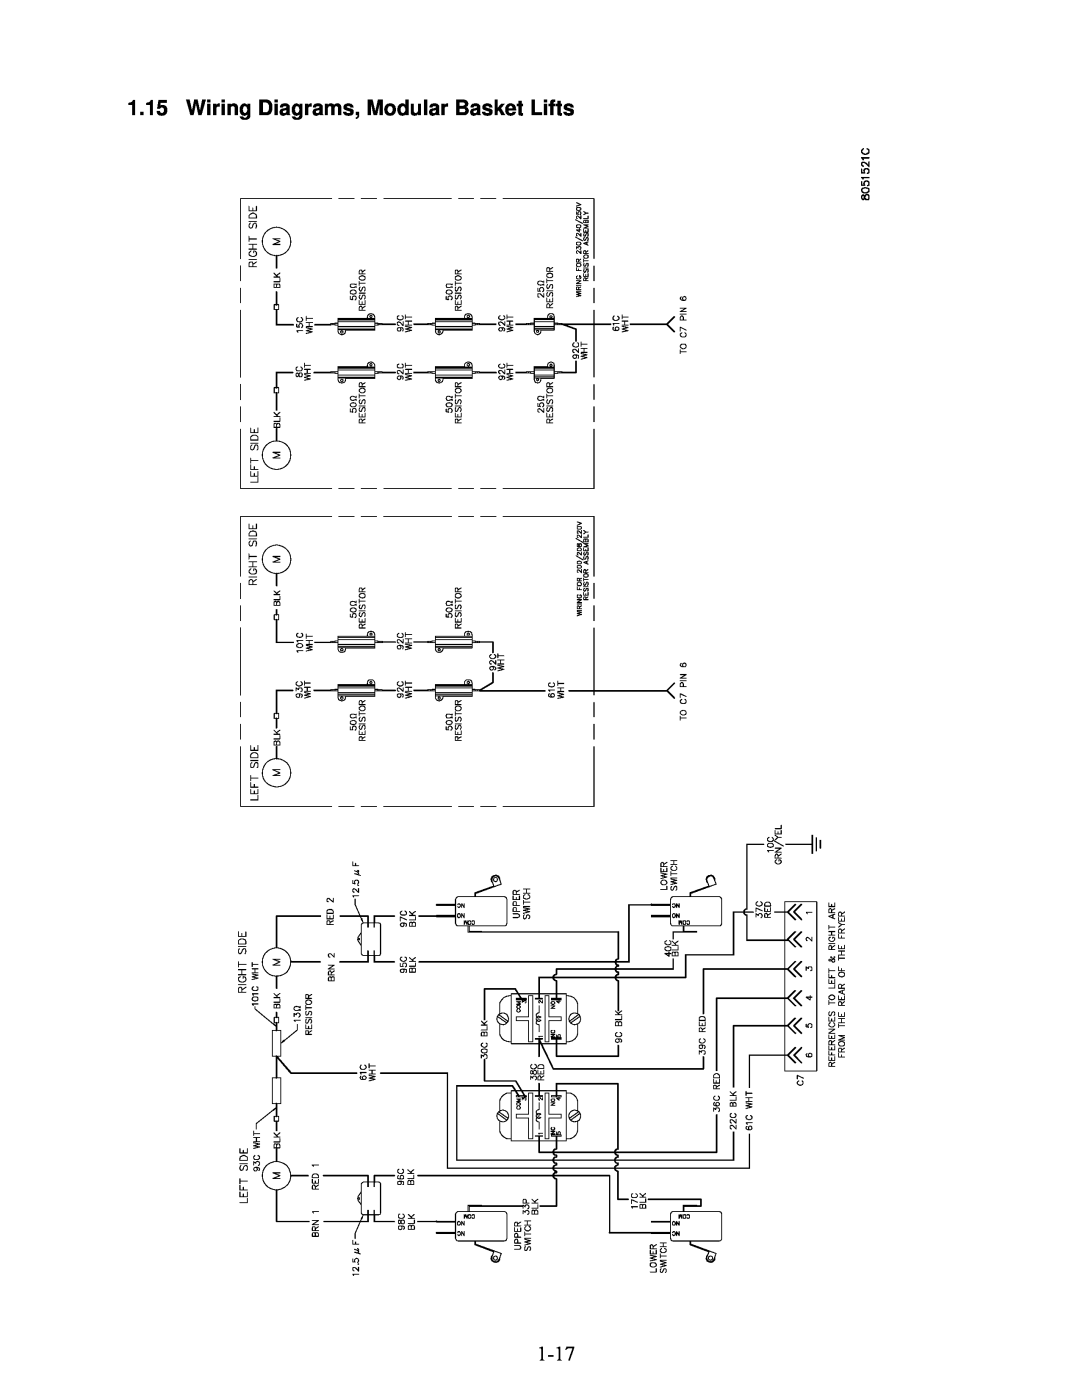 Frymaster 2836 manual Wiring Diagrams, Modular Basket Lifts 